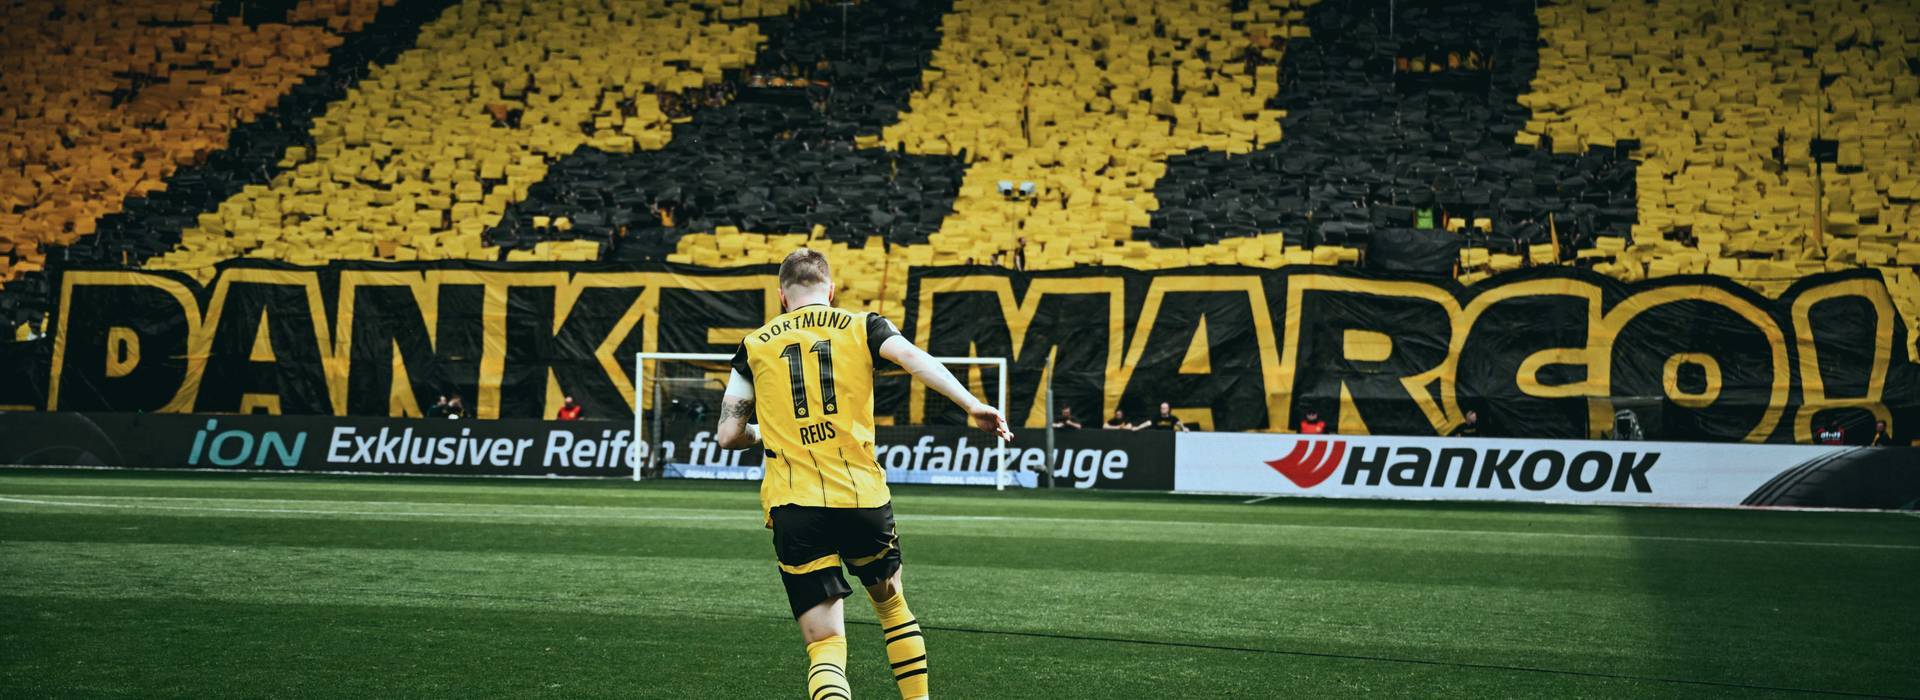 Dortmunder Junge. Schwarzgelbe Legende – das letzte Heimspiel von Marco Reus